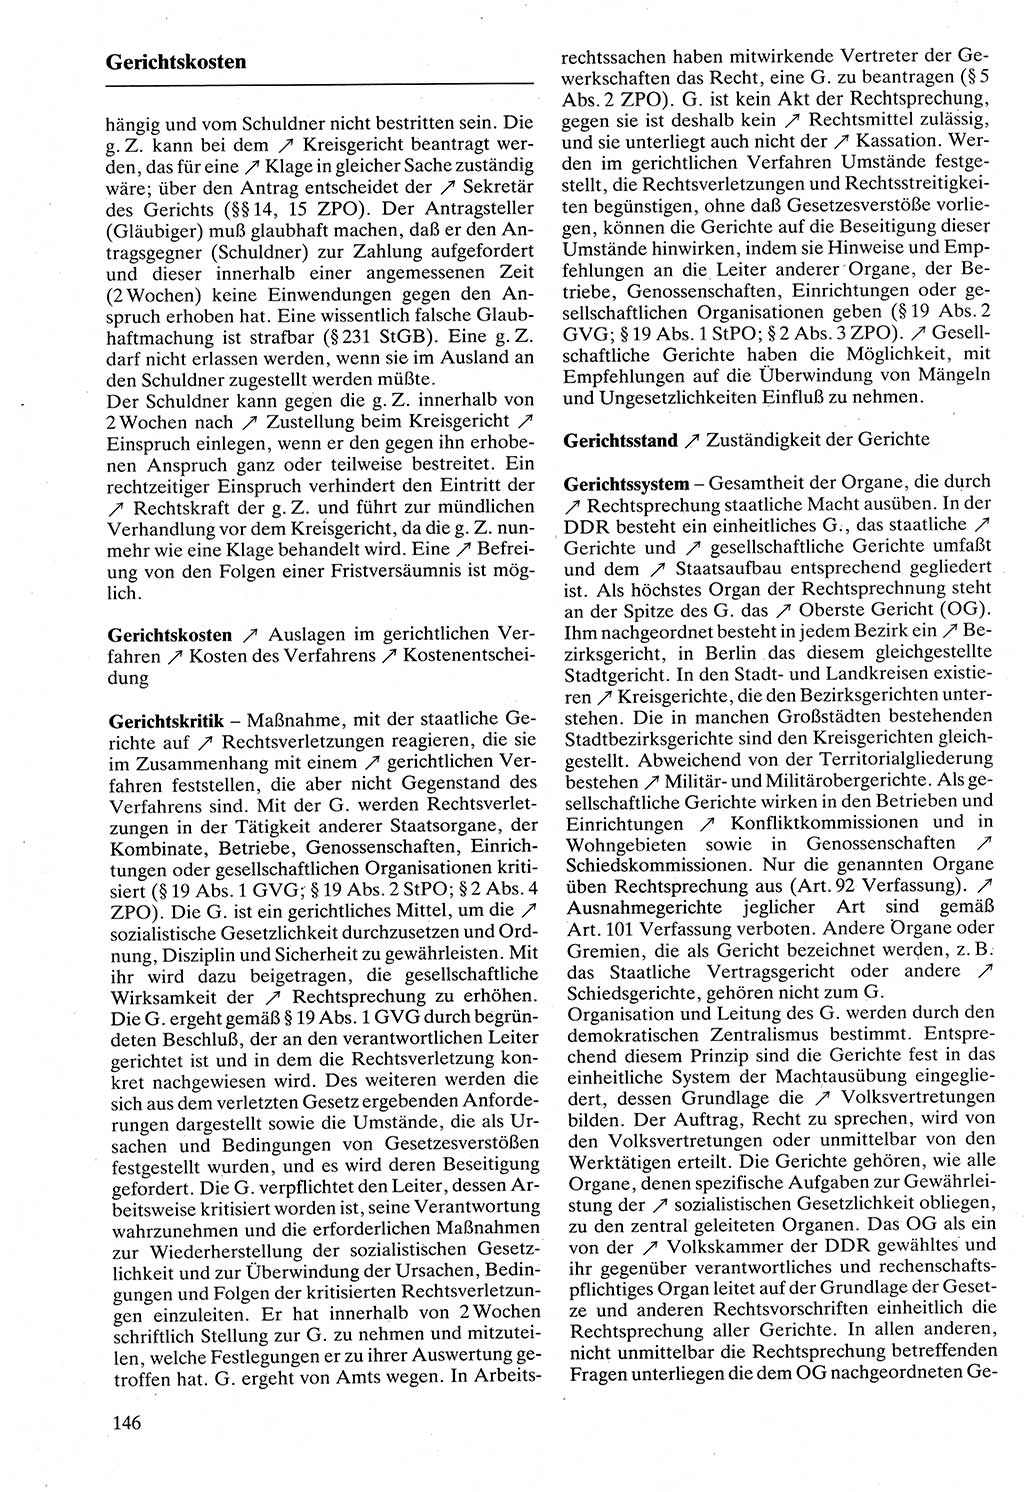 Rechtslexikon [Deutsche Demokratische Republik (DDR)] 1988, Seite 146 (Rechtslex. DDR 1988, S. 146)